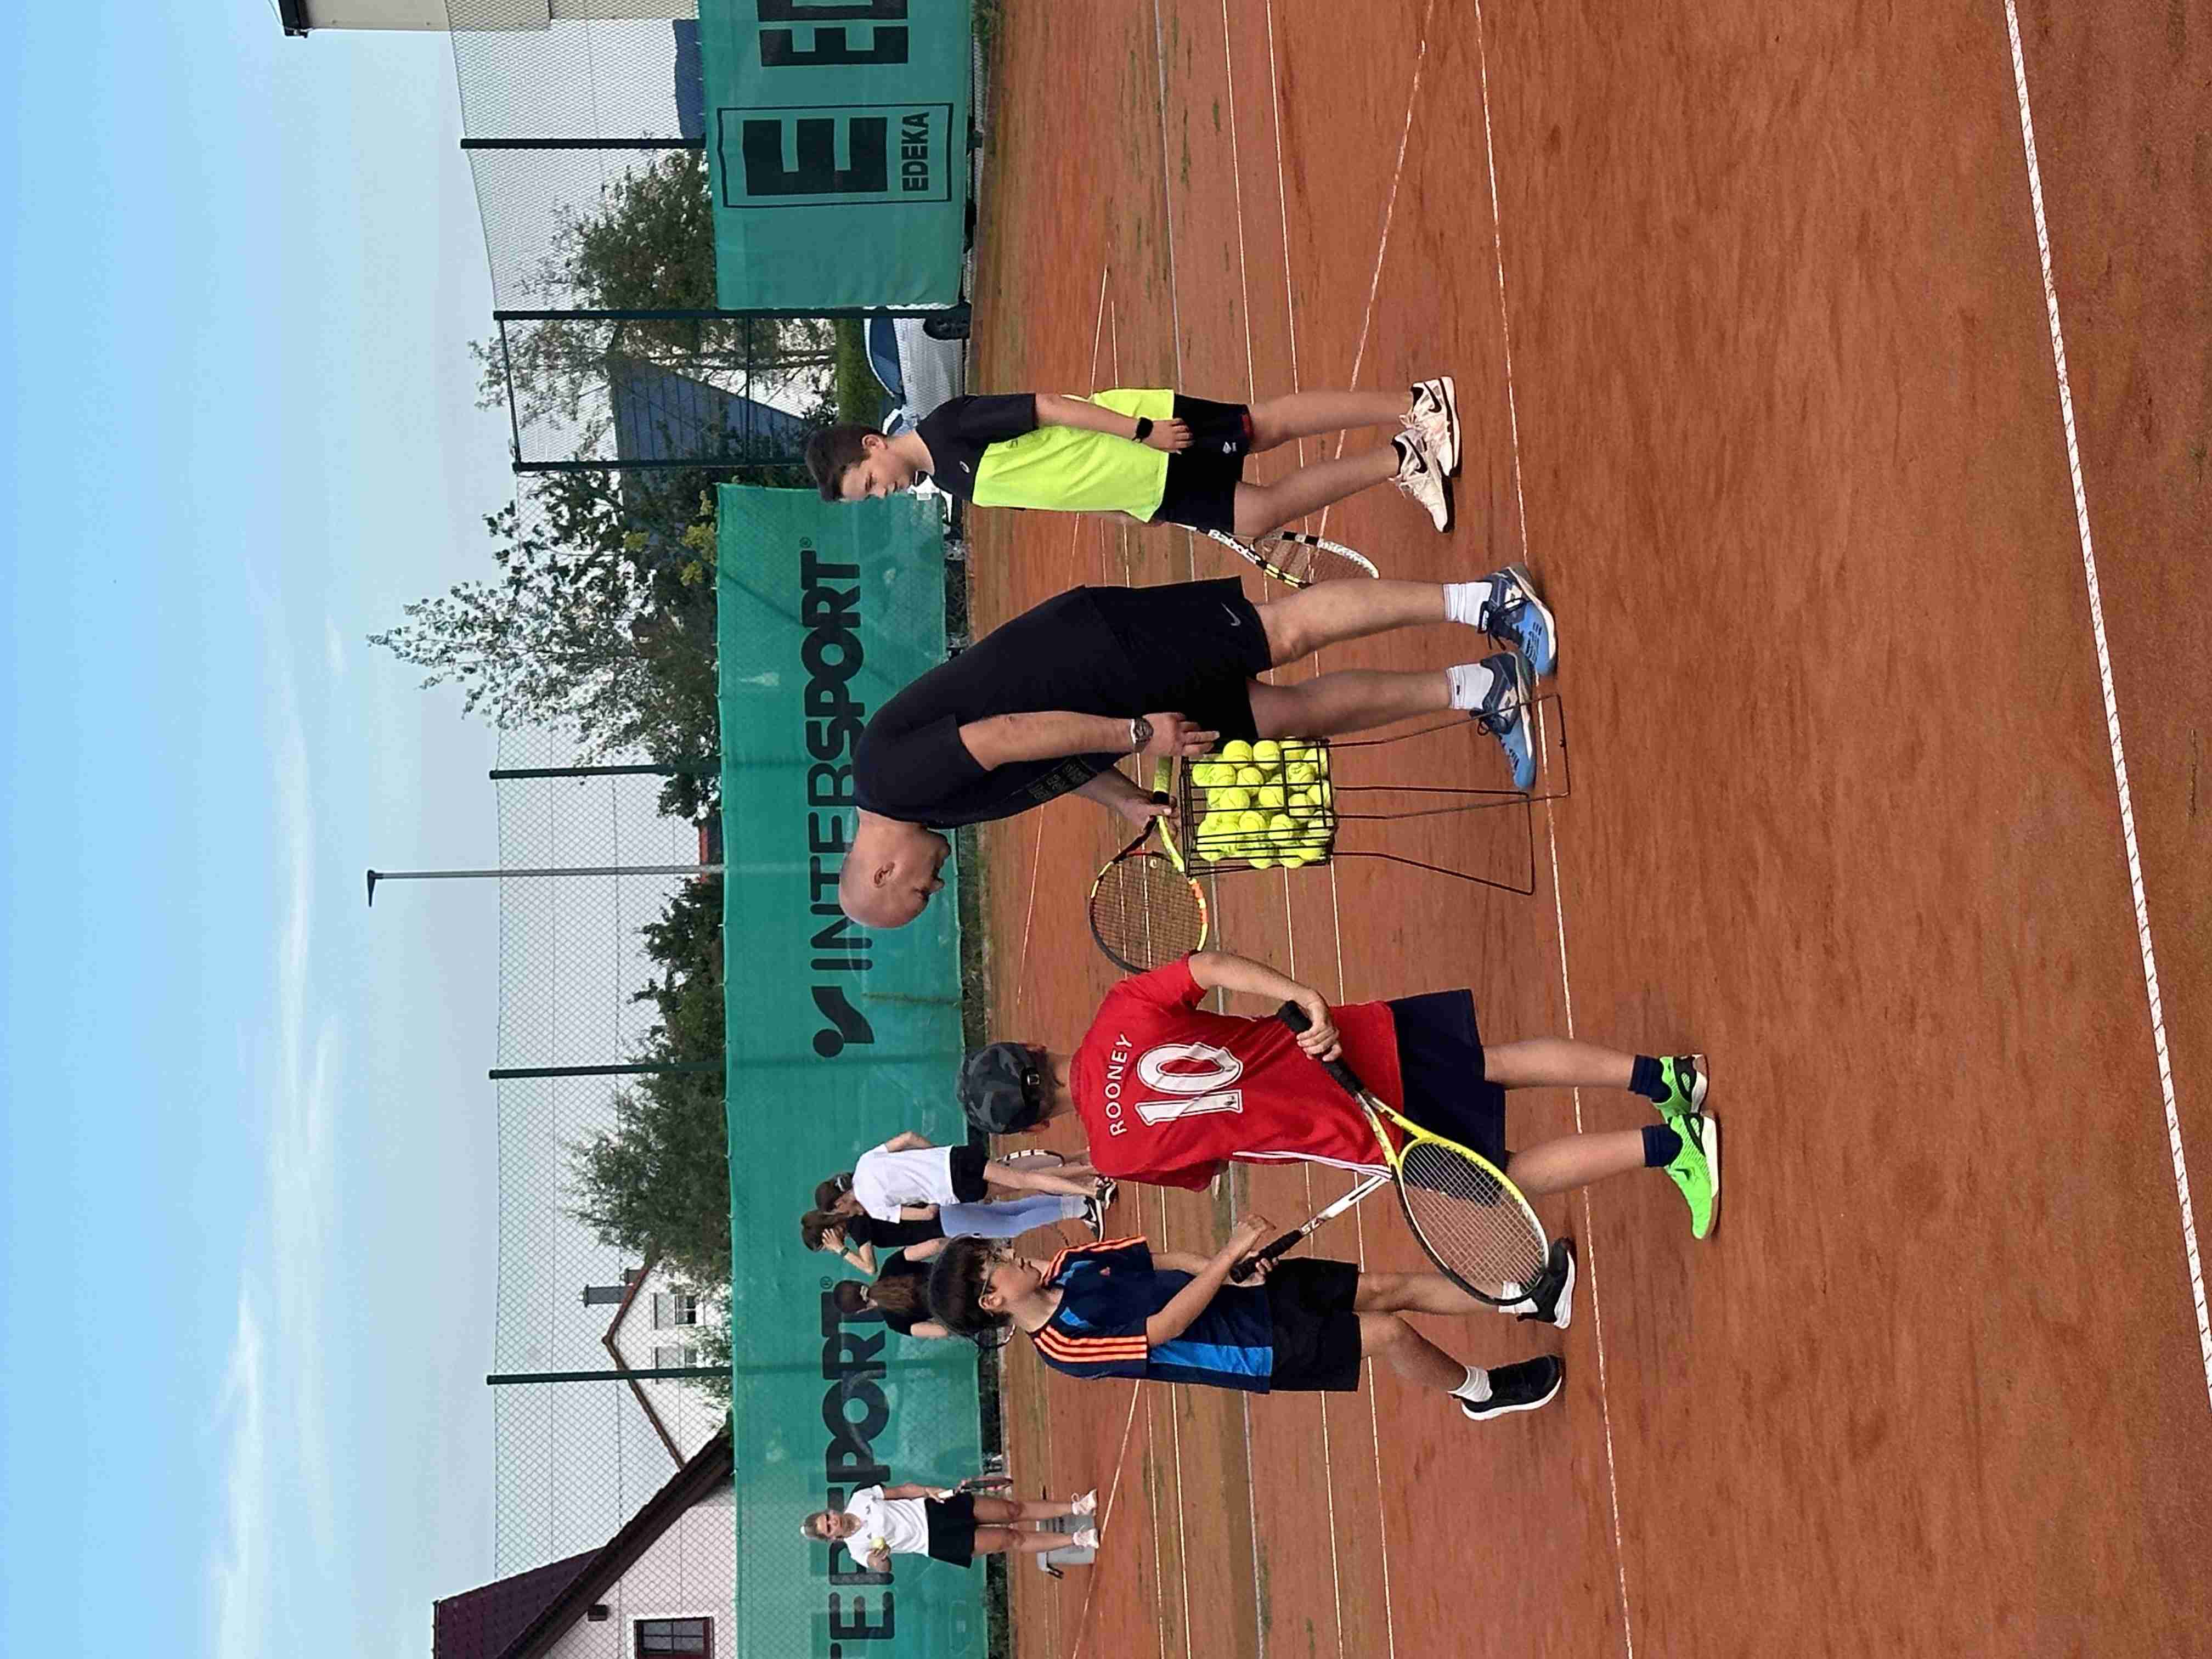                                                     Voller Schwung in´s Tennisvergnügen                                    